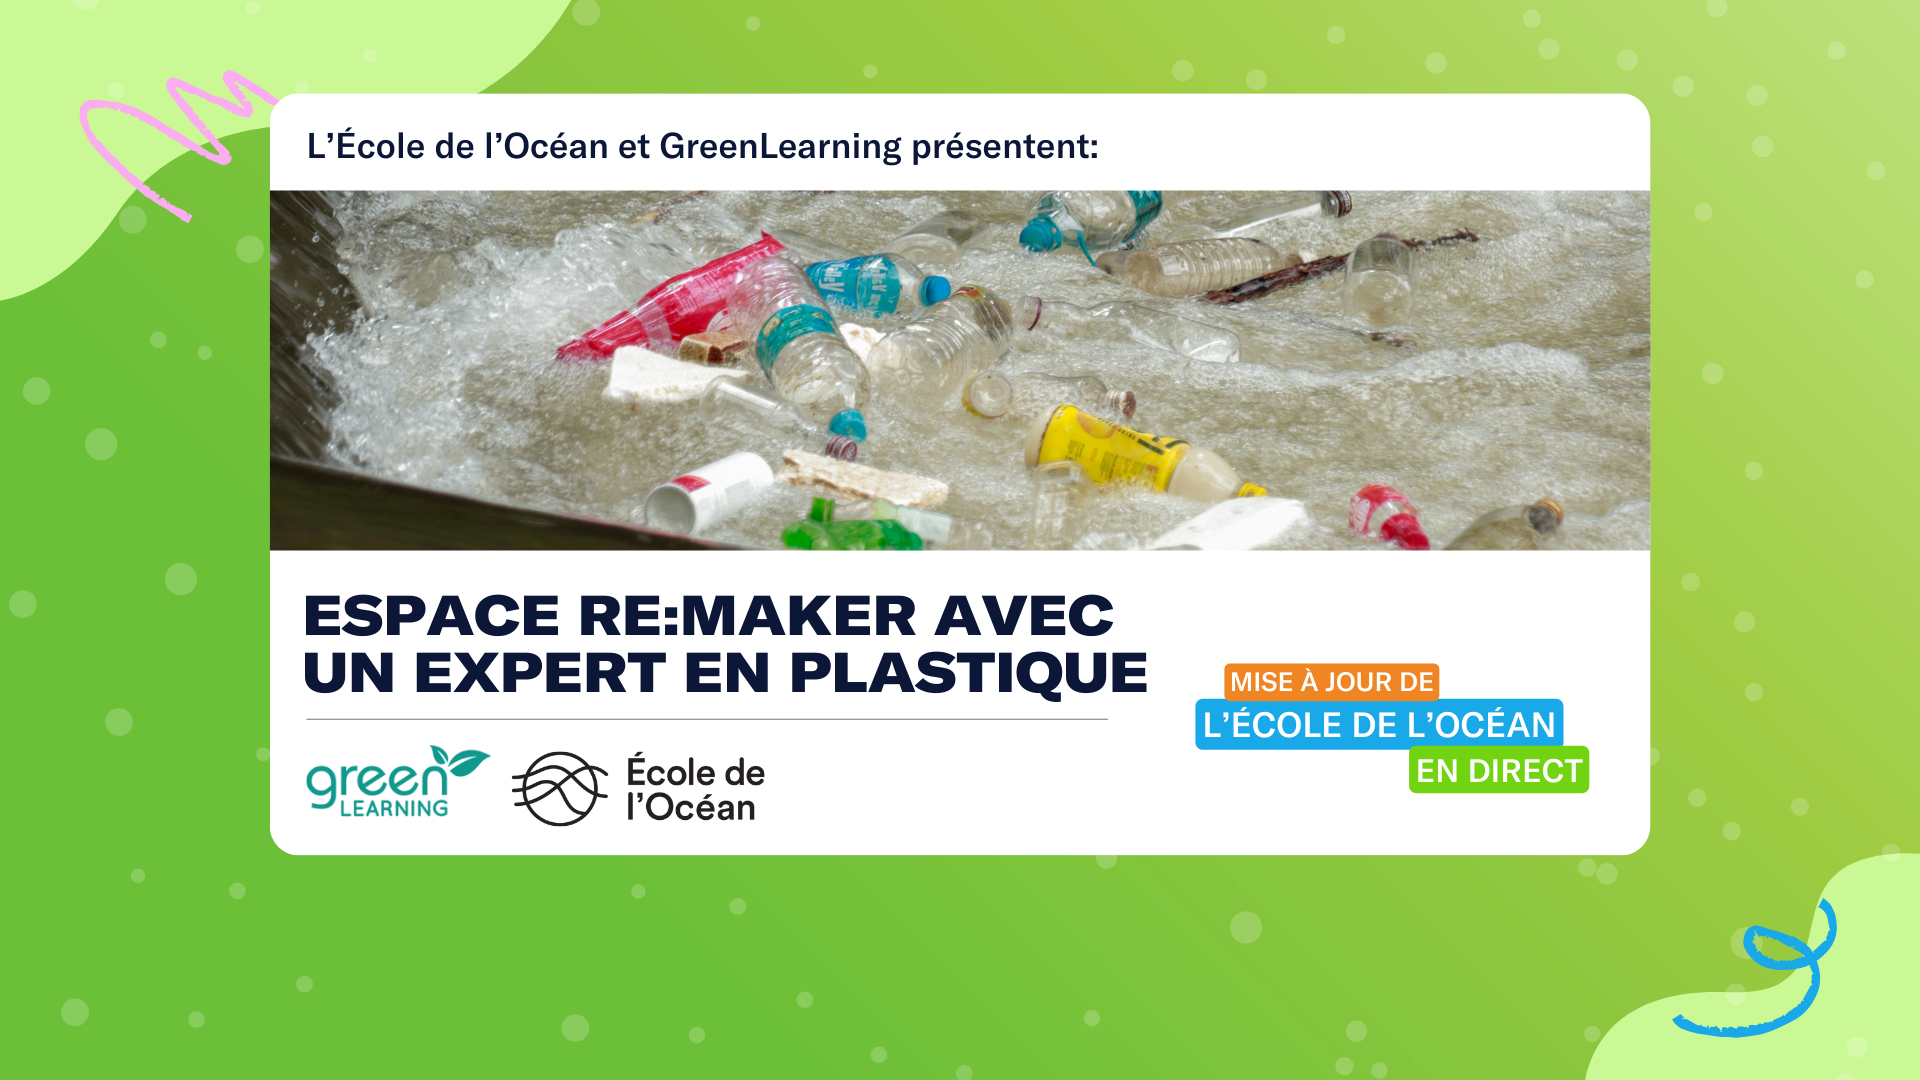 Bouteilles en plastique et déchets flottant dans l'eau. Le texte se lit comme suit : "L'École de l'Océan et GreenLearning présentent : Espace RE:Maker avec un expert en plastique". Les logos de l’École de l’Océan et de GreenLearning sont en arrière-plan.